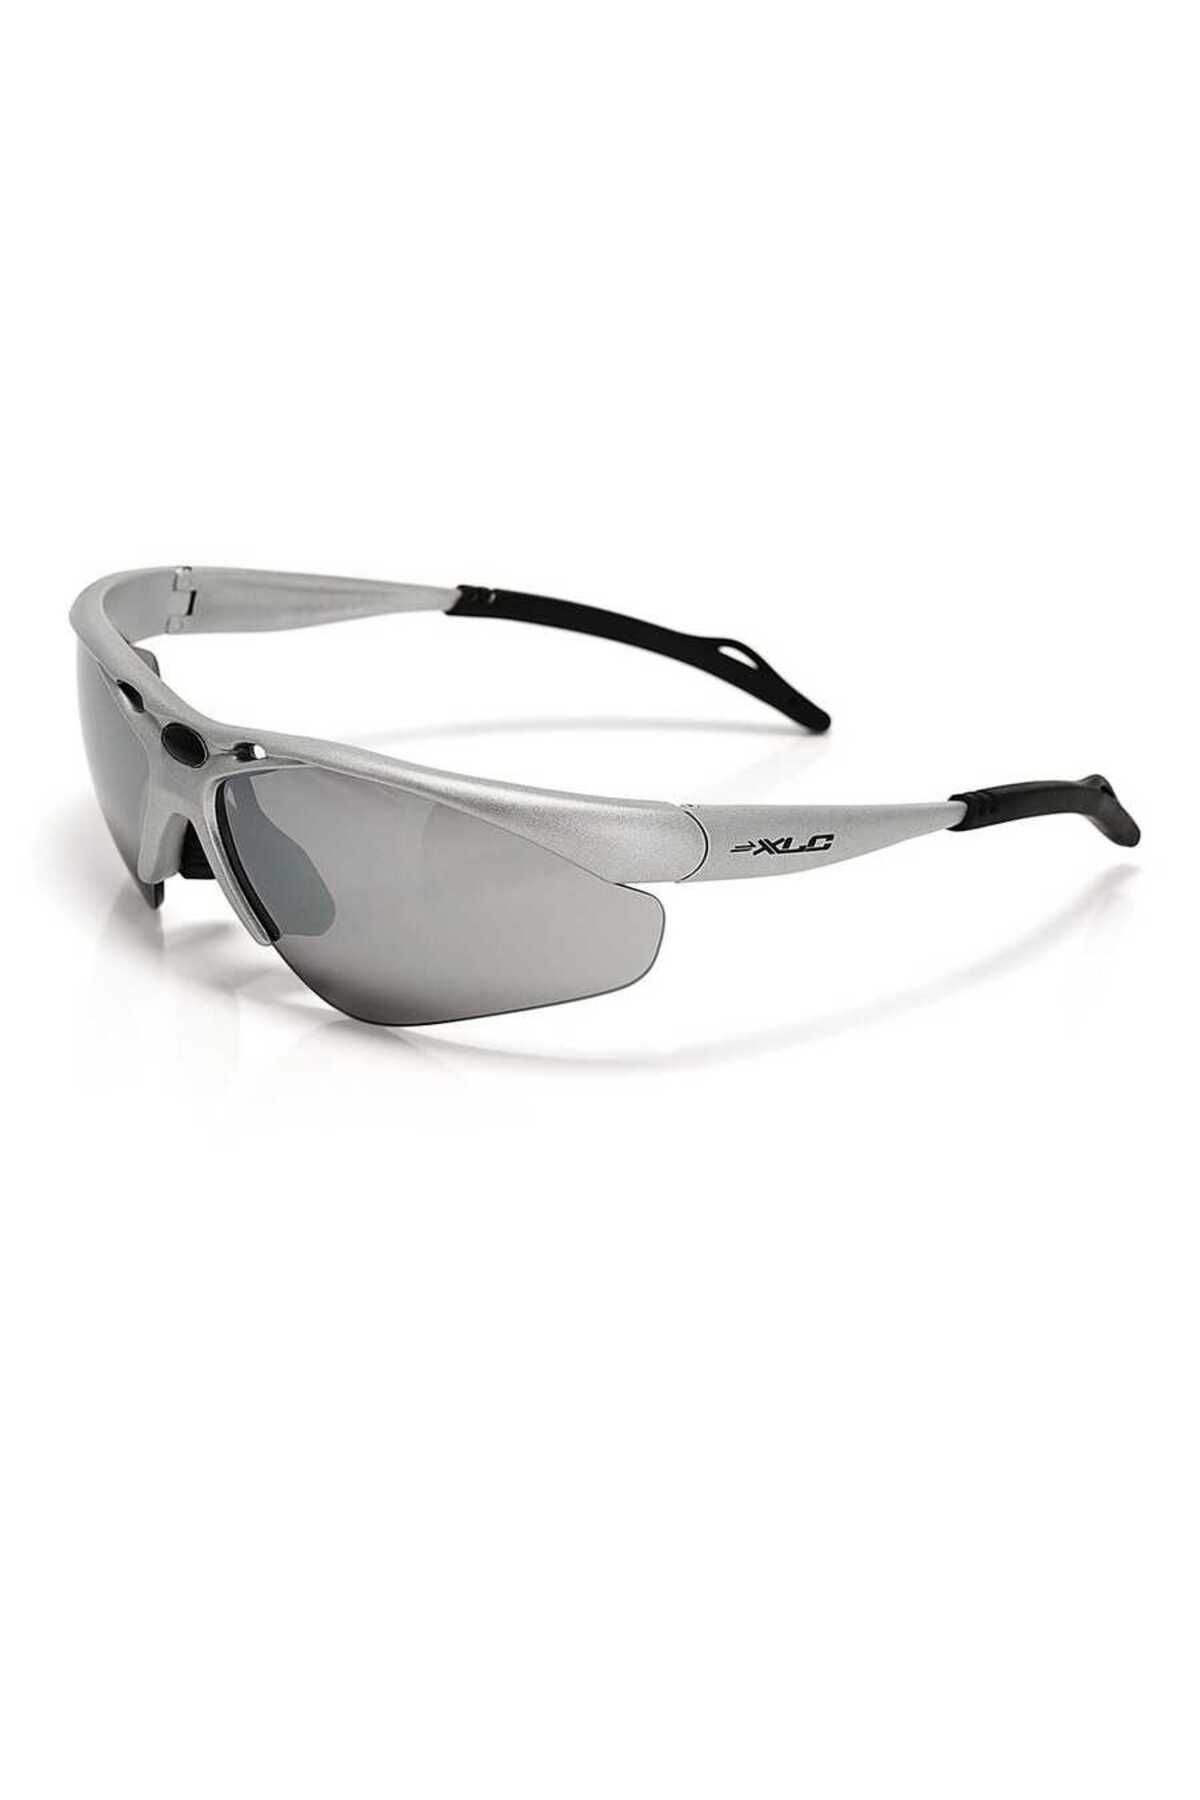 XLC Gözlük 3 Farklı Cam Gri Xlc